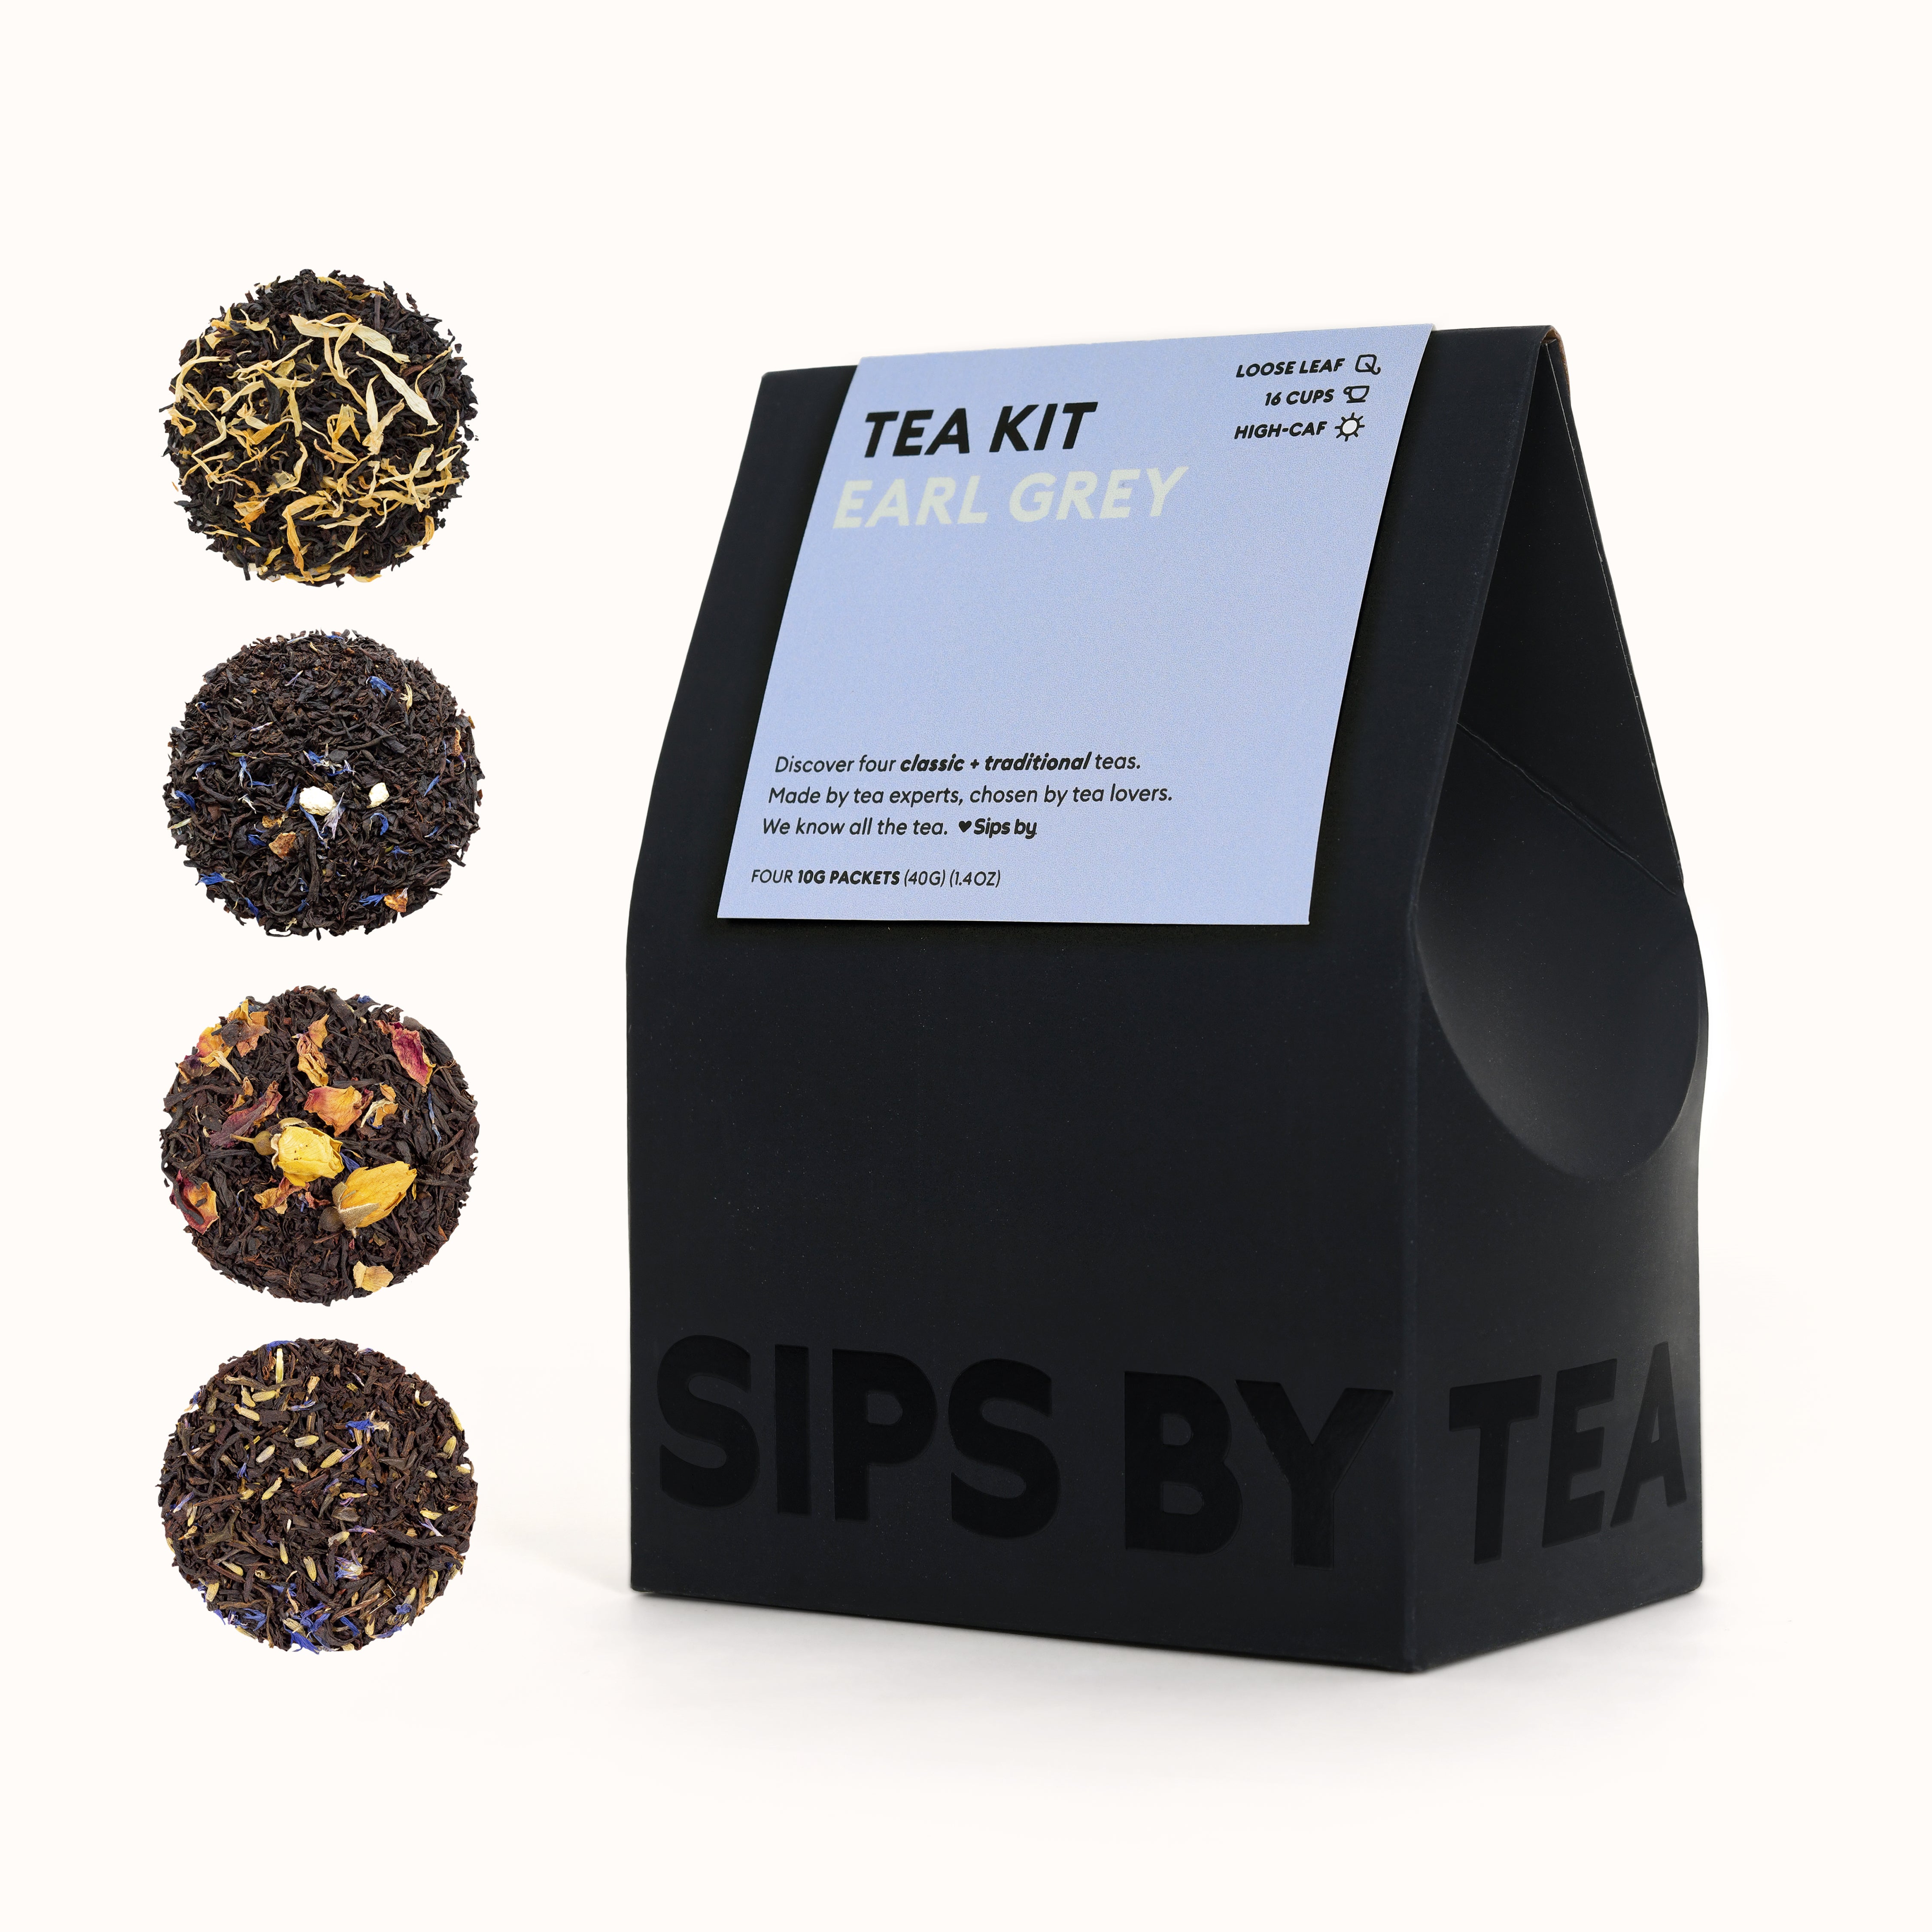 Self Care Kit – Sip N' Slay Tea